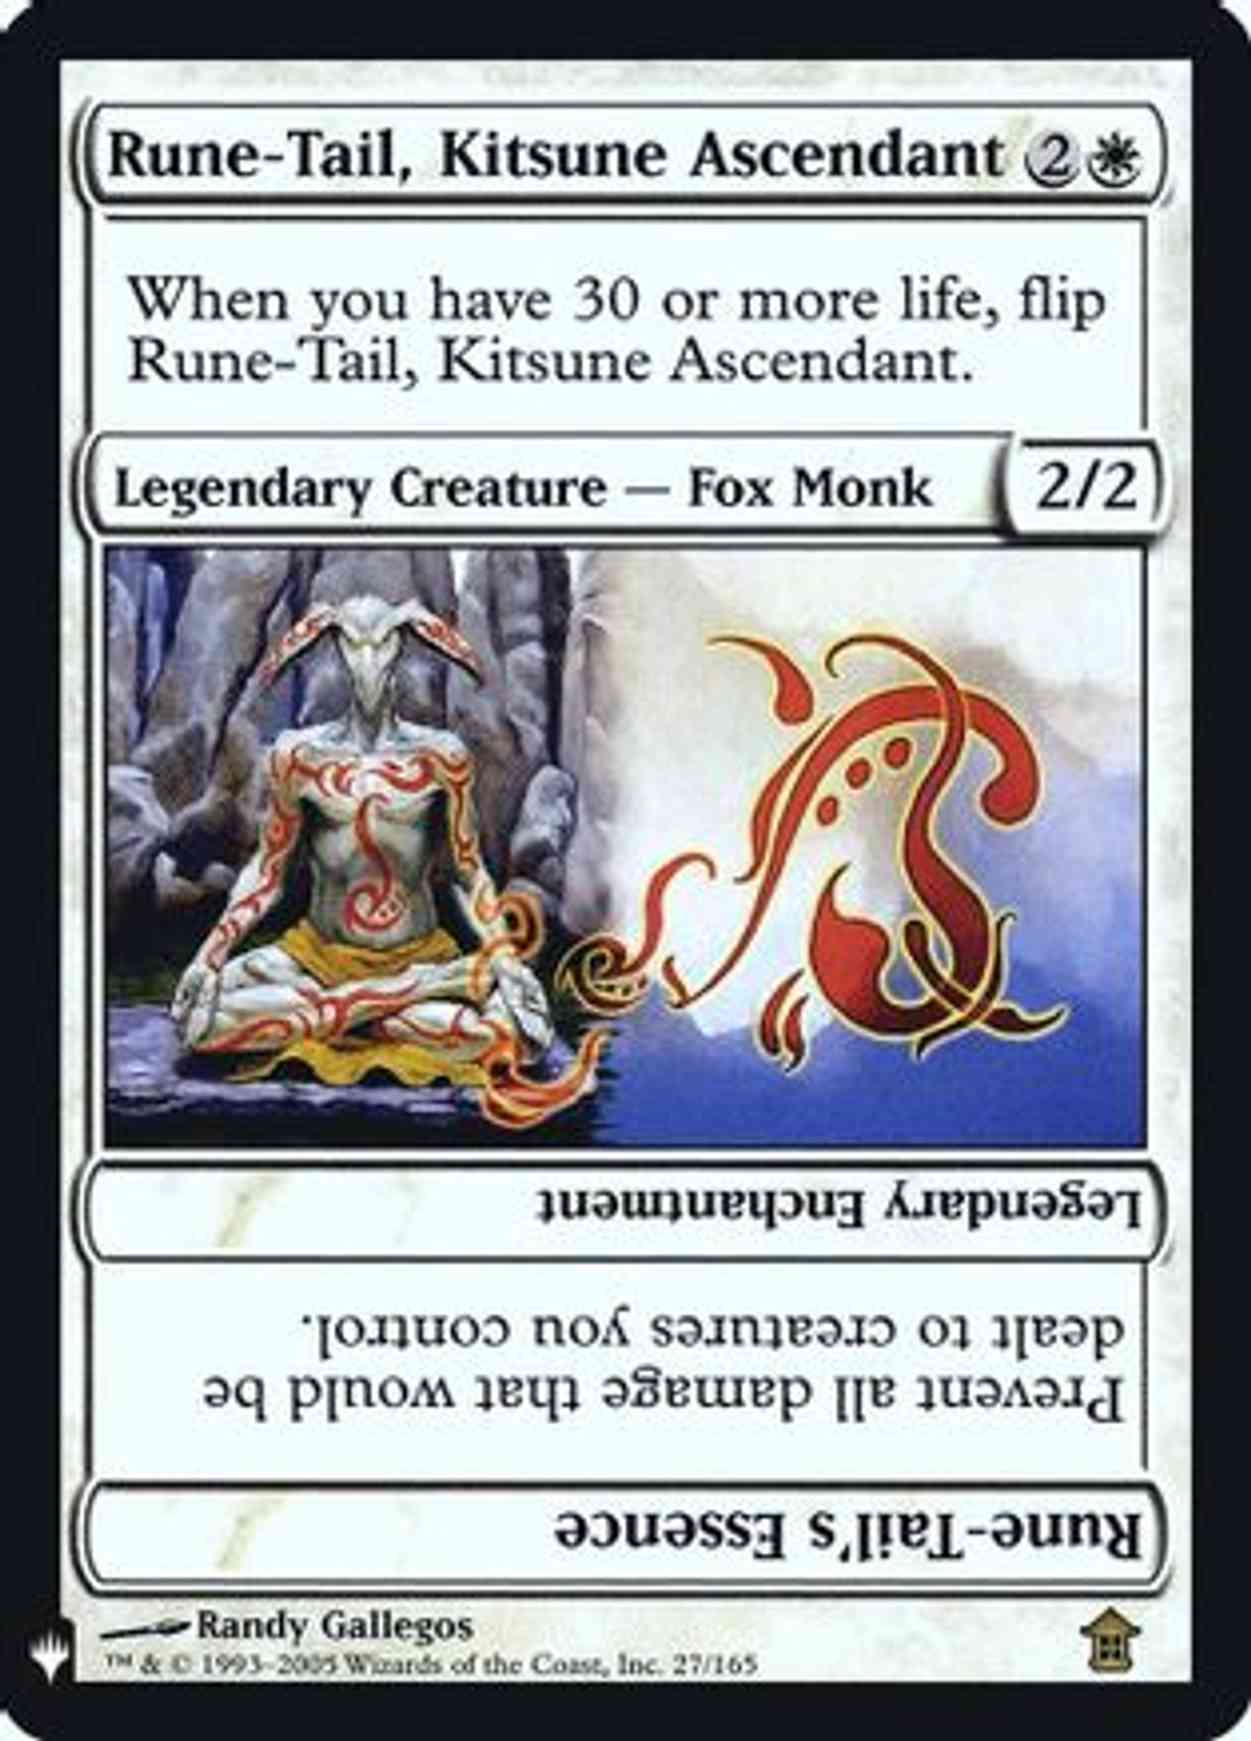 Rune-Tail, Kitsune Ascendant magic card front